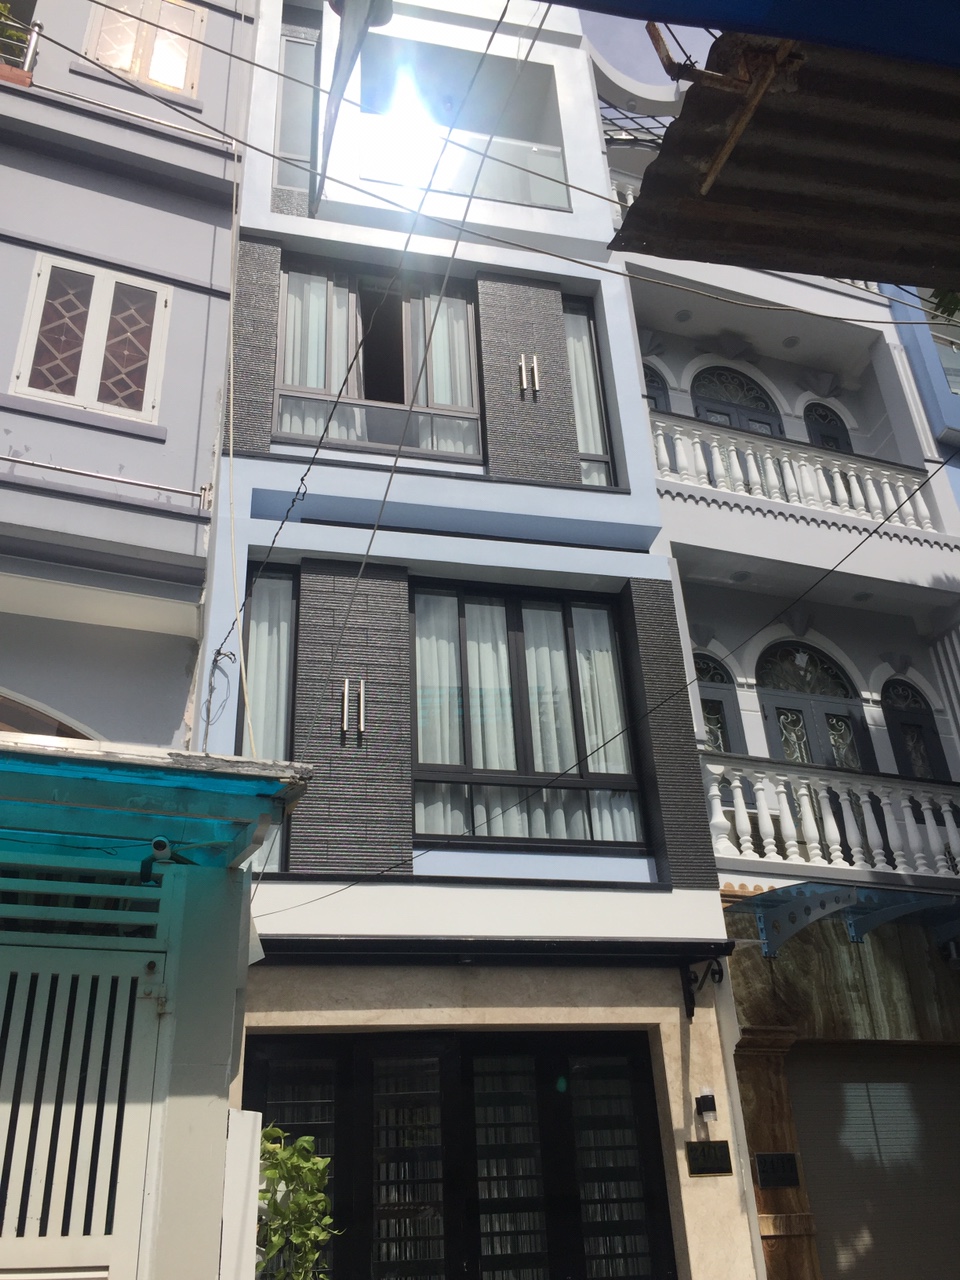 Bán nhà đẹp 3 lầu mặt tiền đường Hoàng Hoa Thám, P12, Q. Tân Bình, giá tốt nhất thị trường